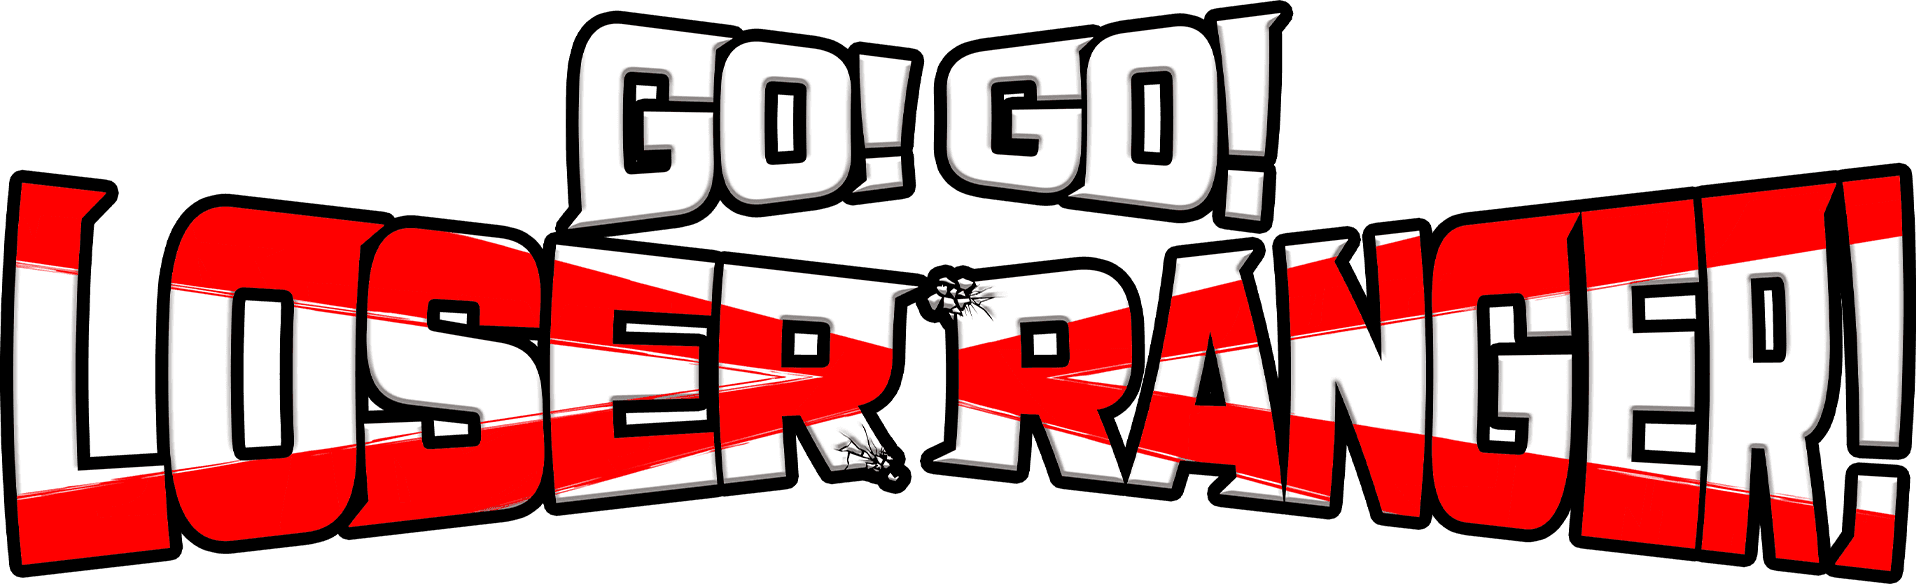 Go! Go! Loser Ranger! logo